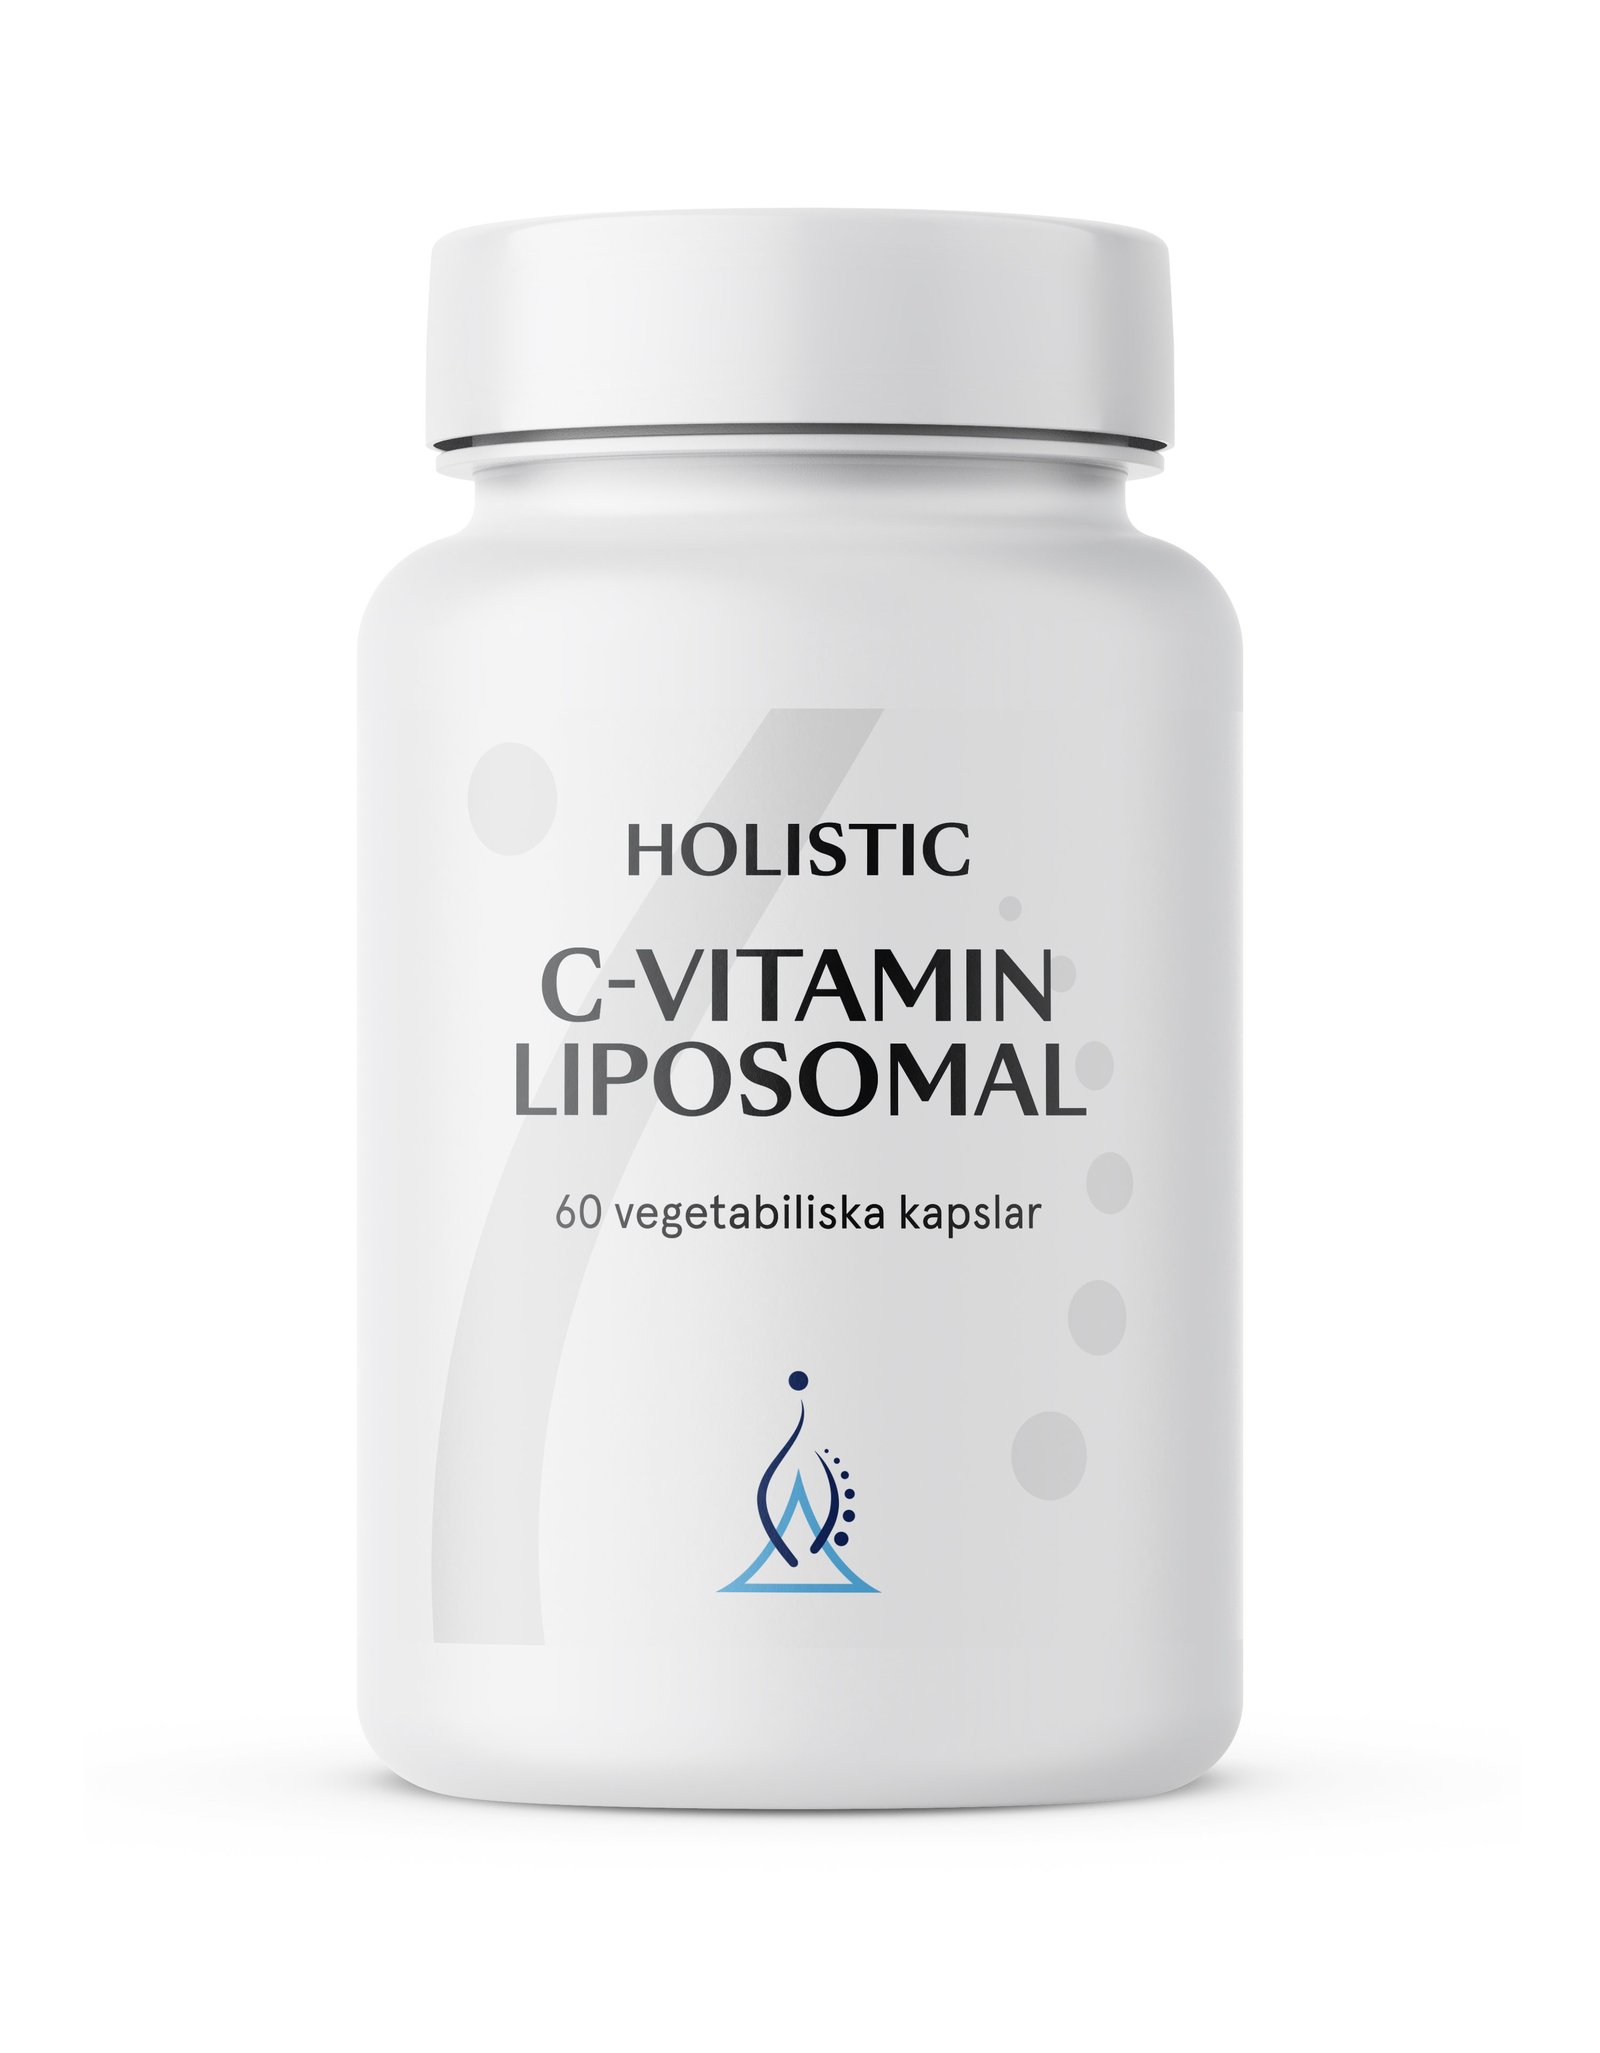 Holistic C-vitamin Liposomal 60 kapslar